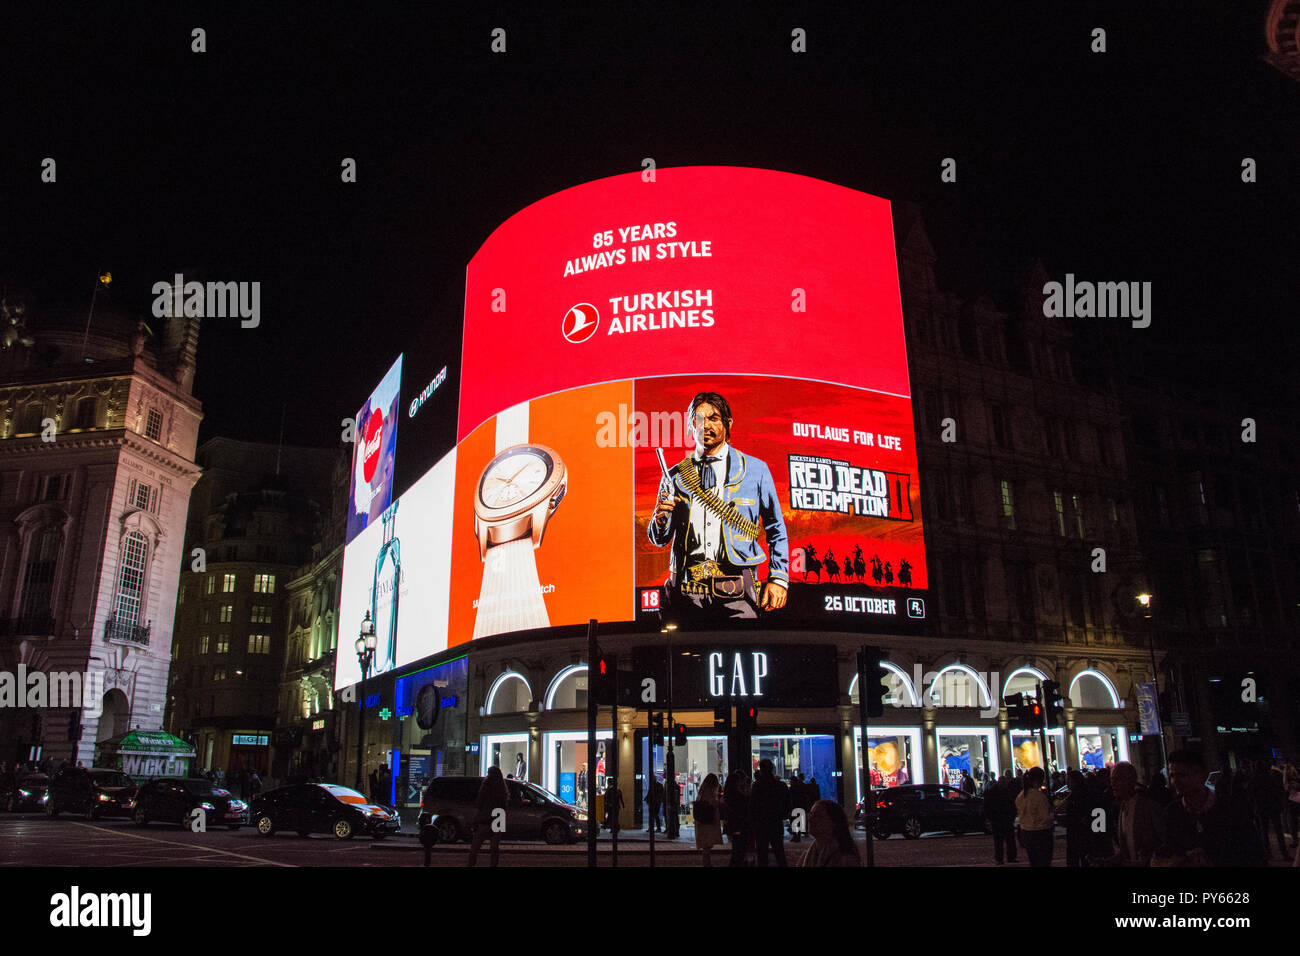 Turkish Airlines, 85 Ans Toujours dans la publicité style sur Piccadilly Lights - l'immense nouvel écran numérique LED Landsec sur Piccadilly Circus, Londres, Royaume-Uni Banque D'Images